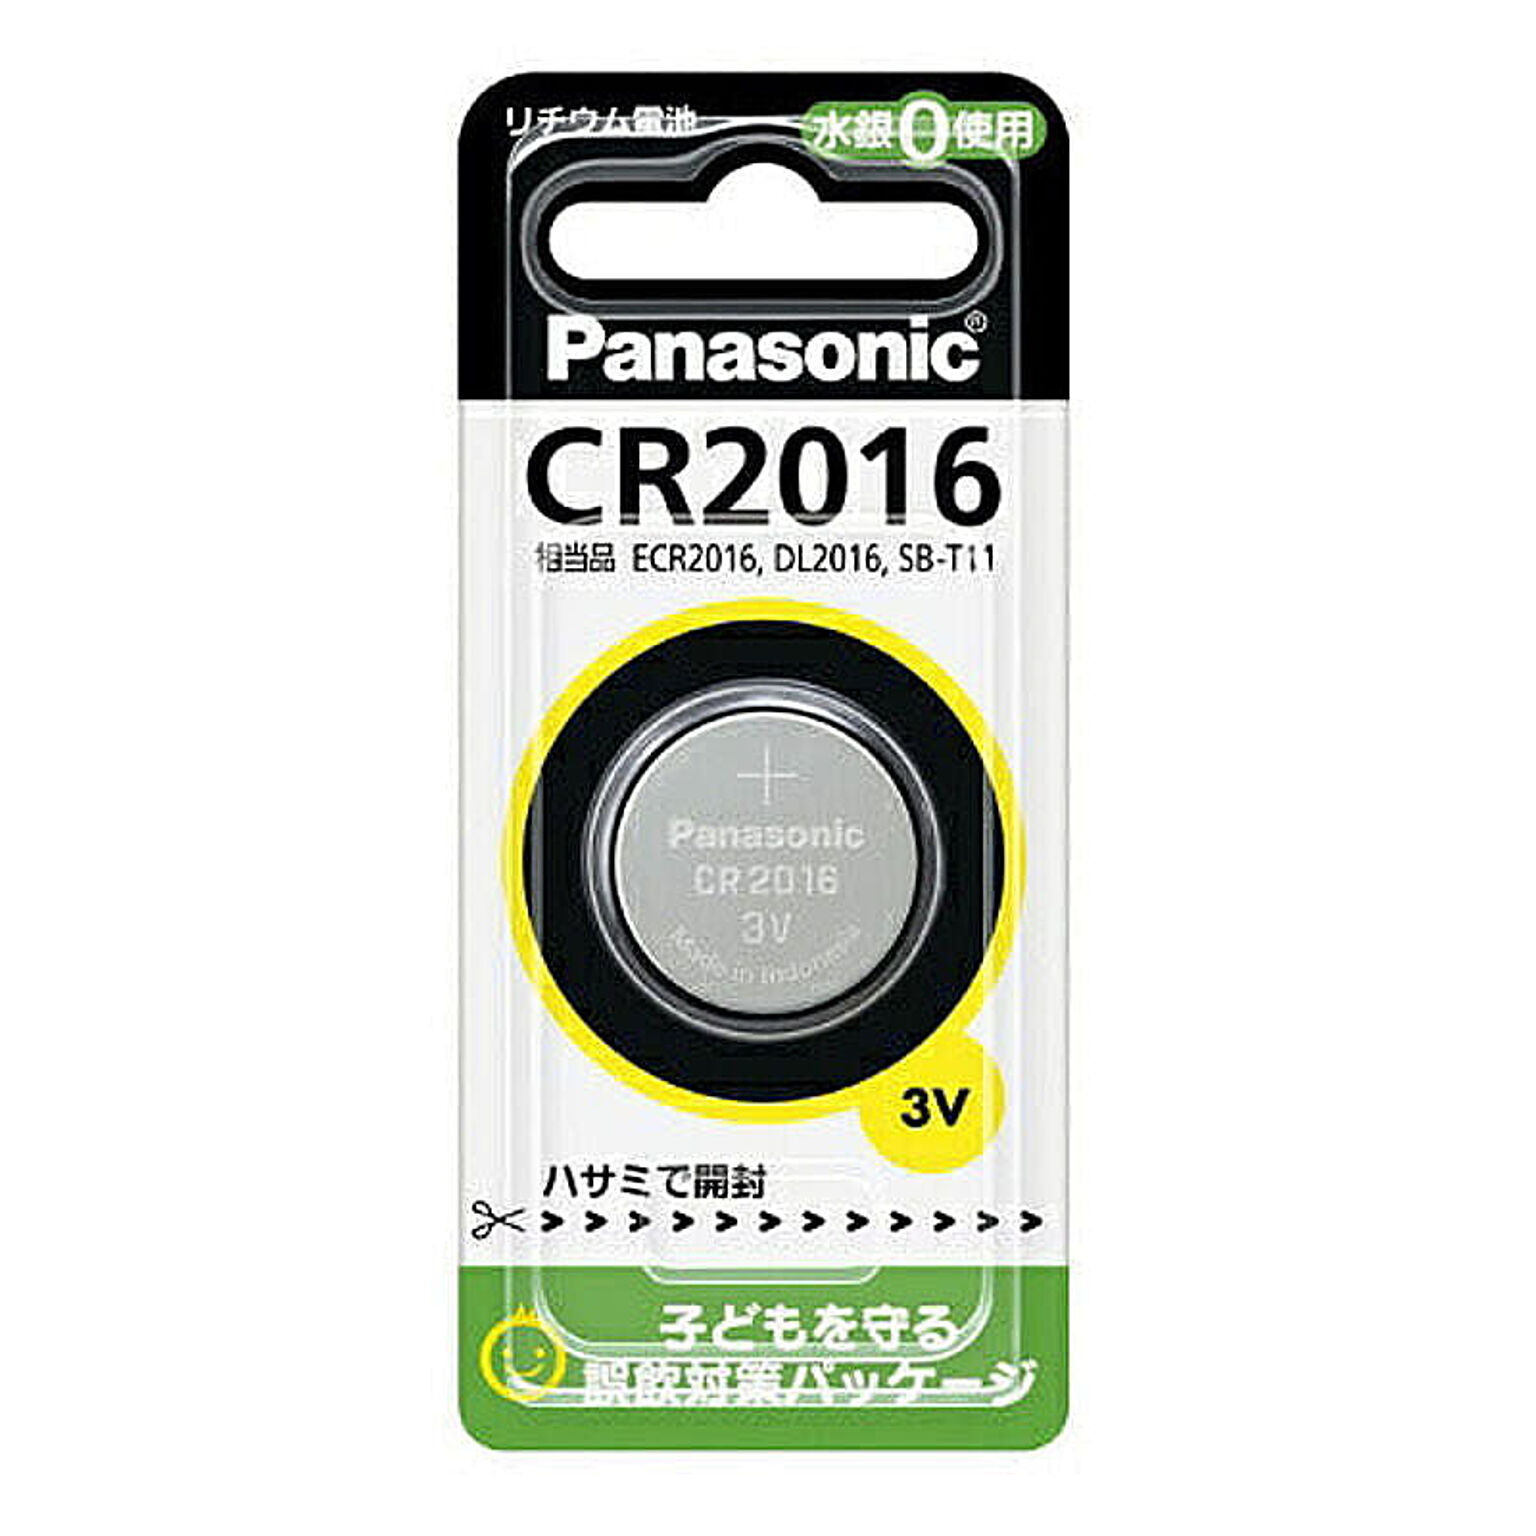 パナソニック Panasonic コイン形リチウム電池 ボタン電池 3V 1個入CR2016P CR-2016 管理No. 4902704242334